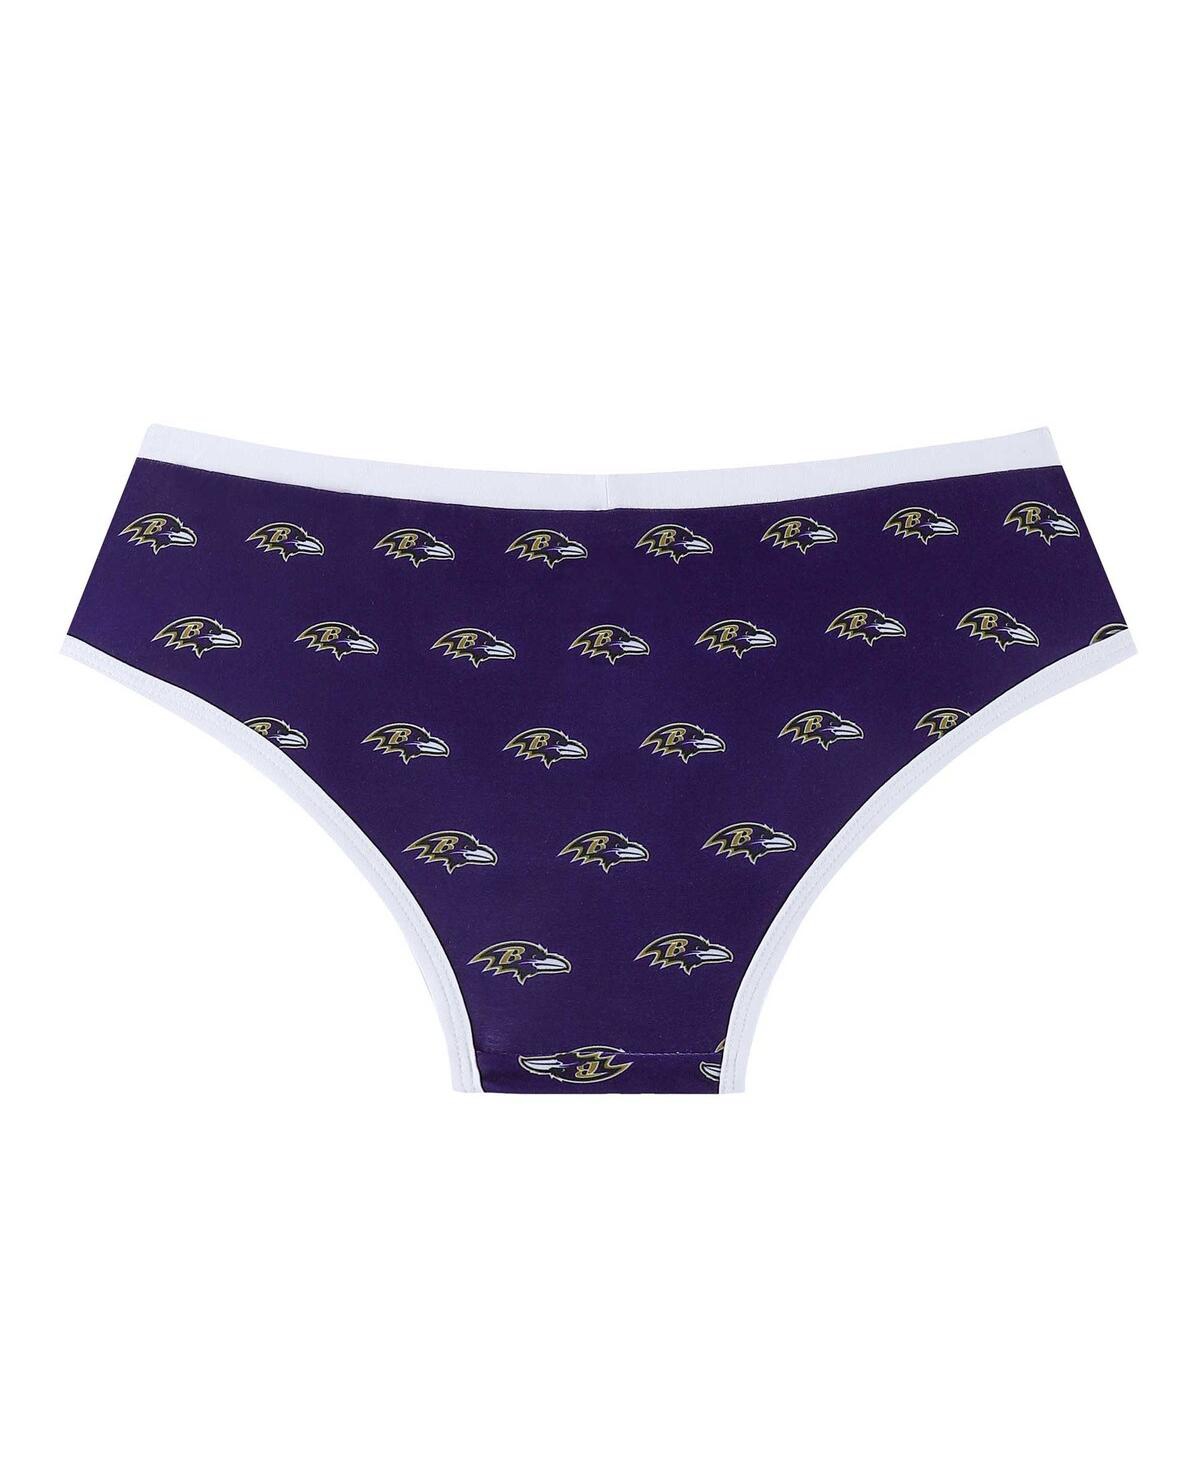 Shop Concepts Sport Women's  Purple Baltimore Ravens Gauge Allover Print Knit Panties